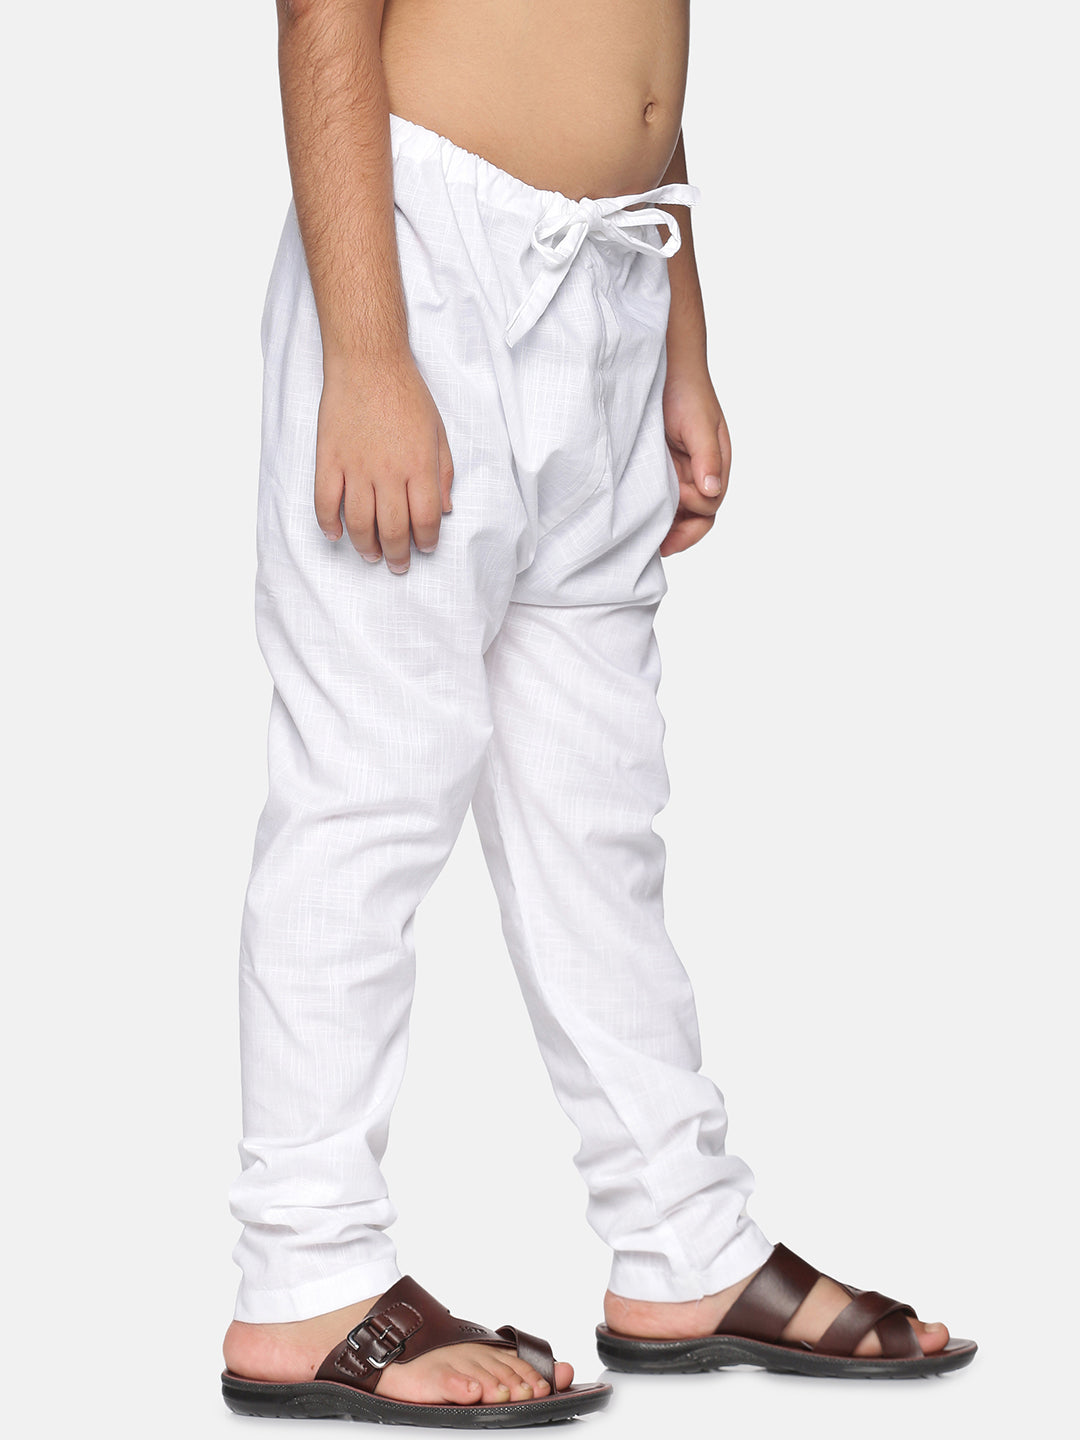 Boys White Colour Cotton Pyjama